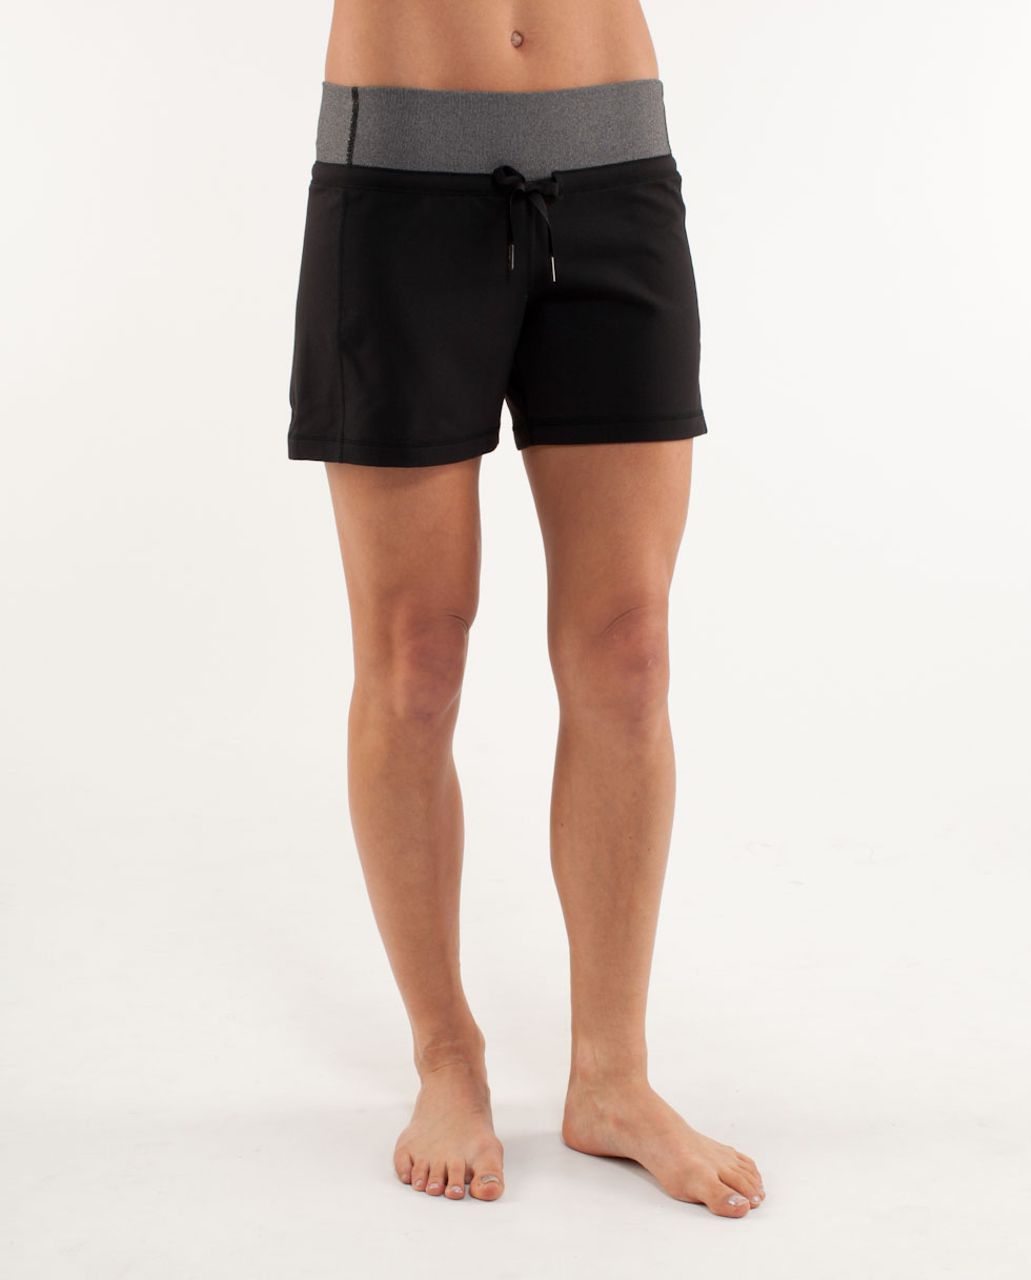 lululemon knockout shorts